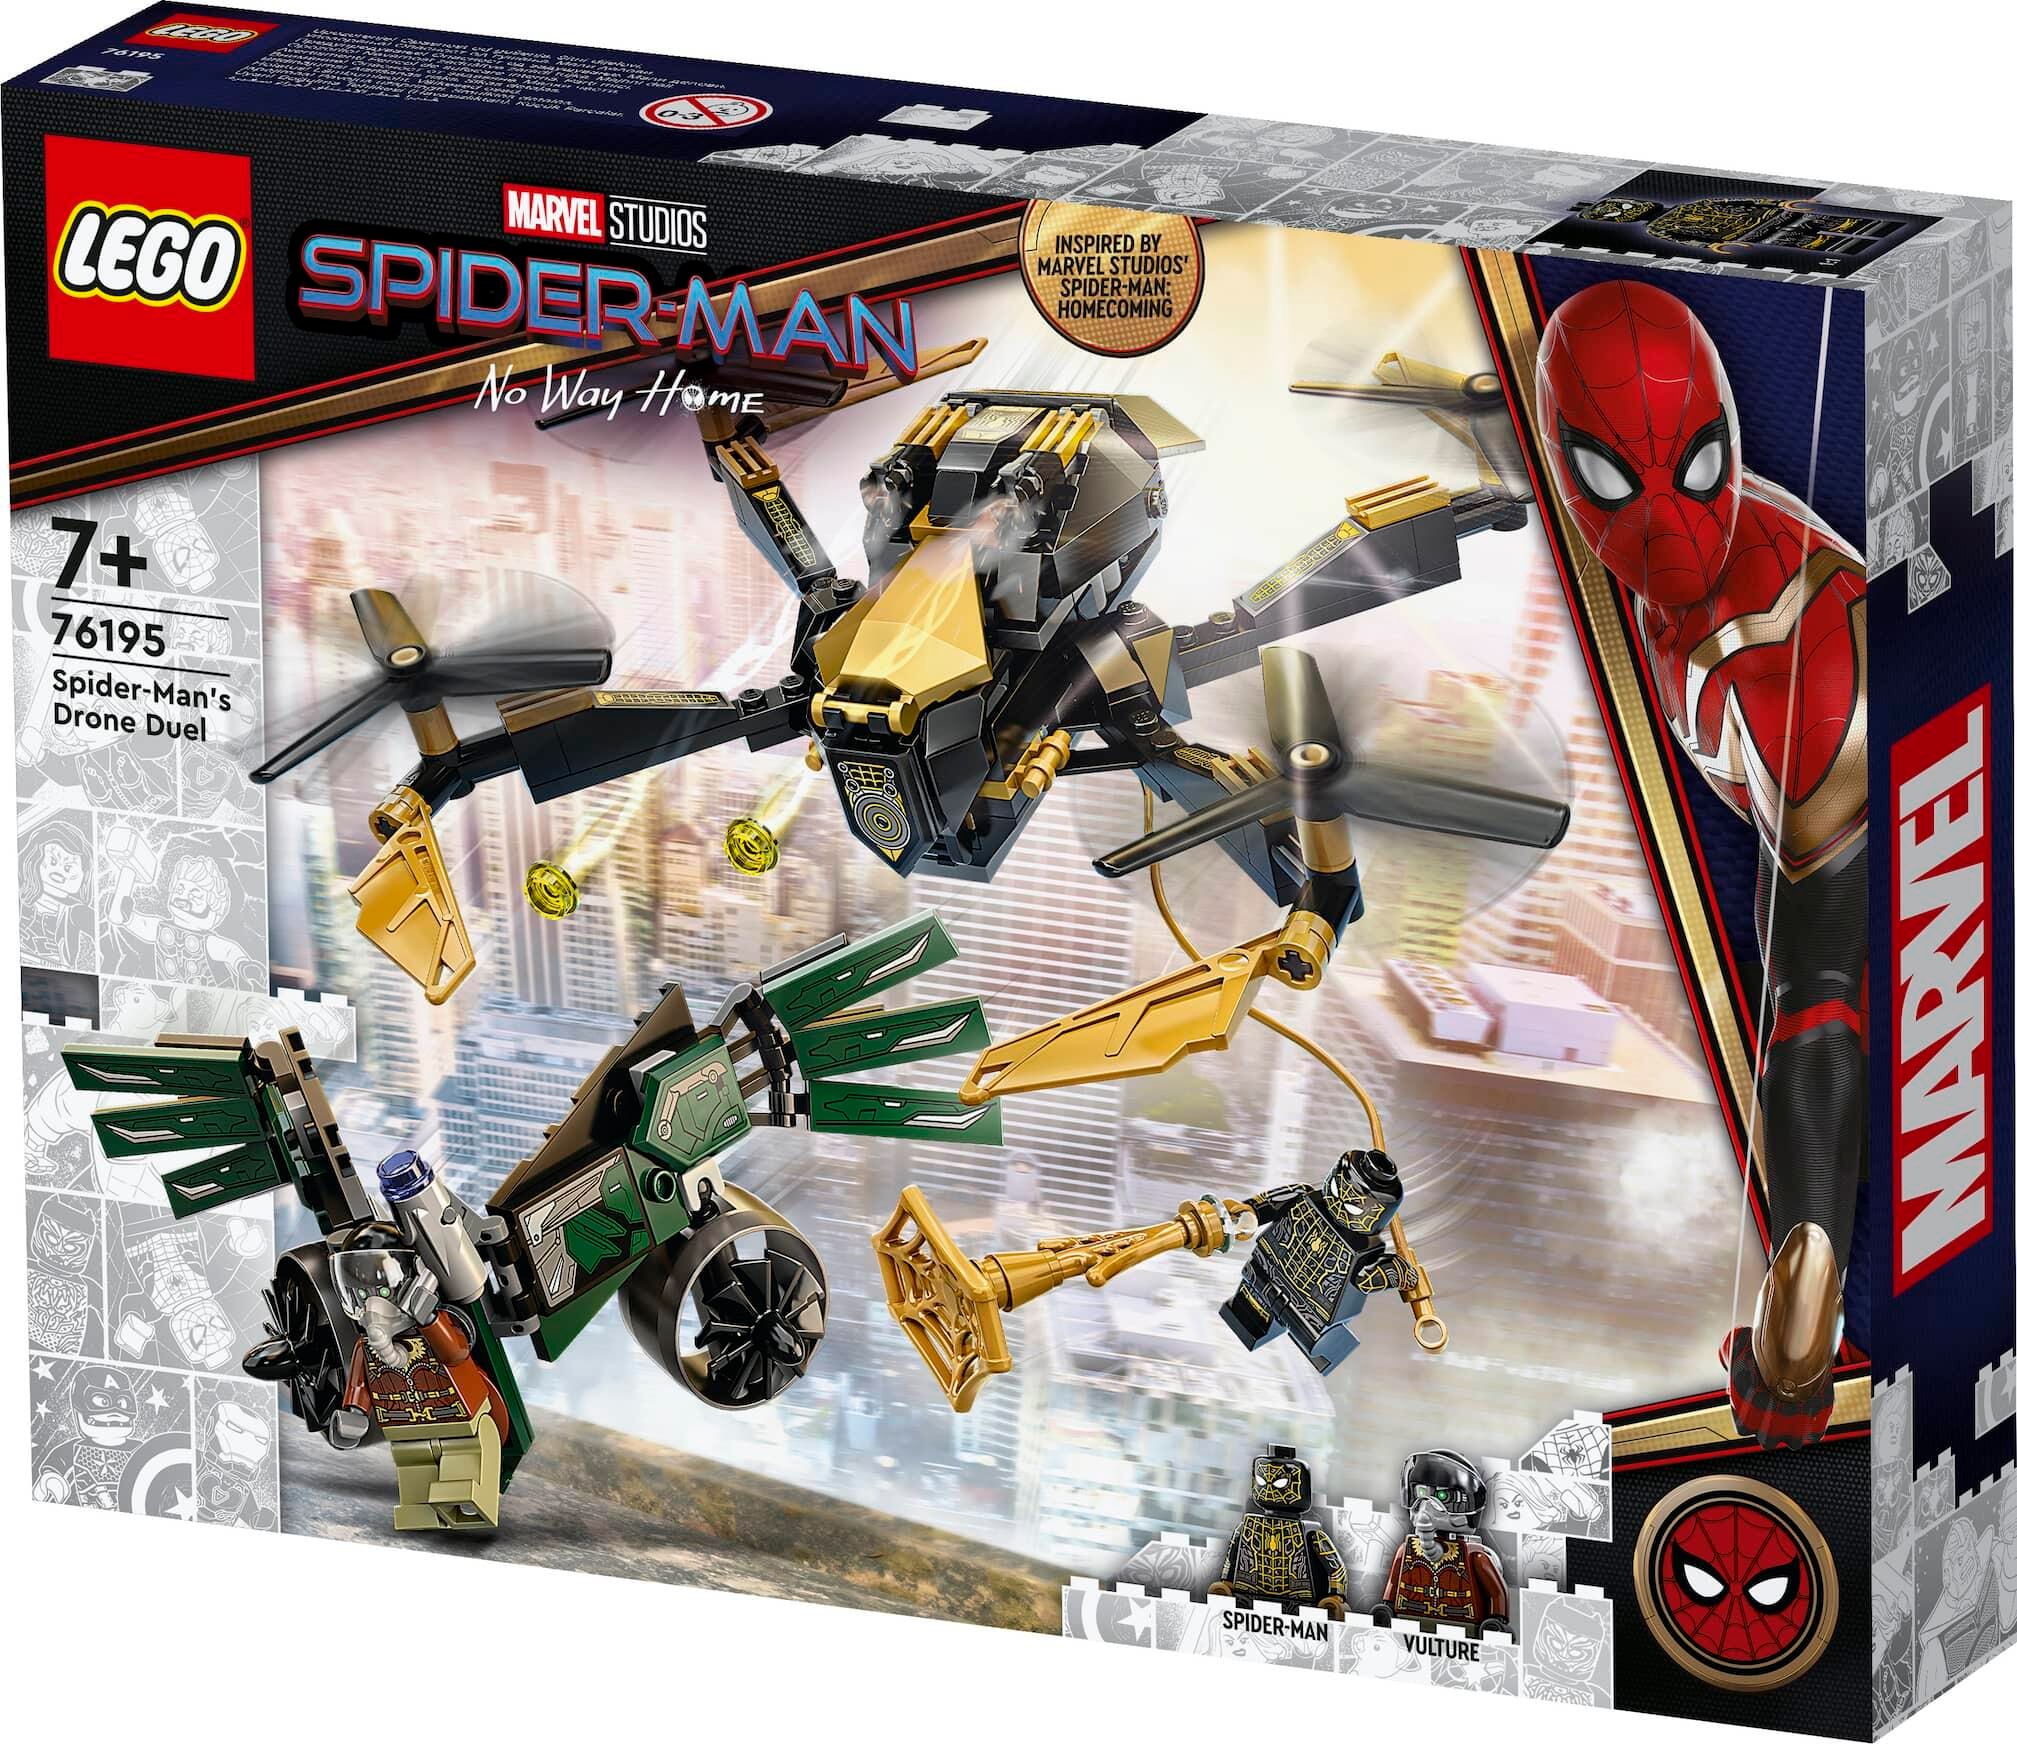 Spider-Man Vulture Lego Set